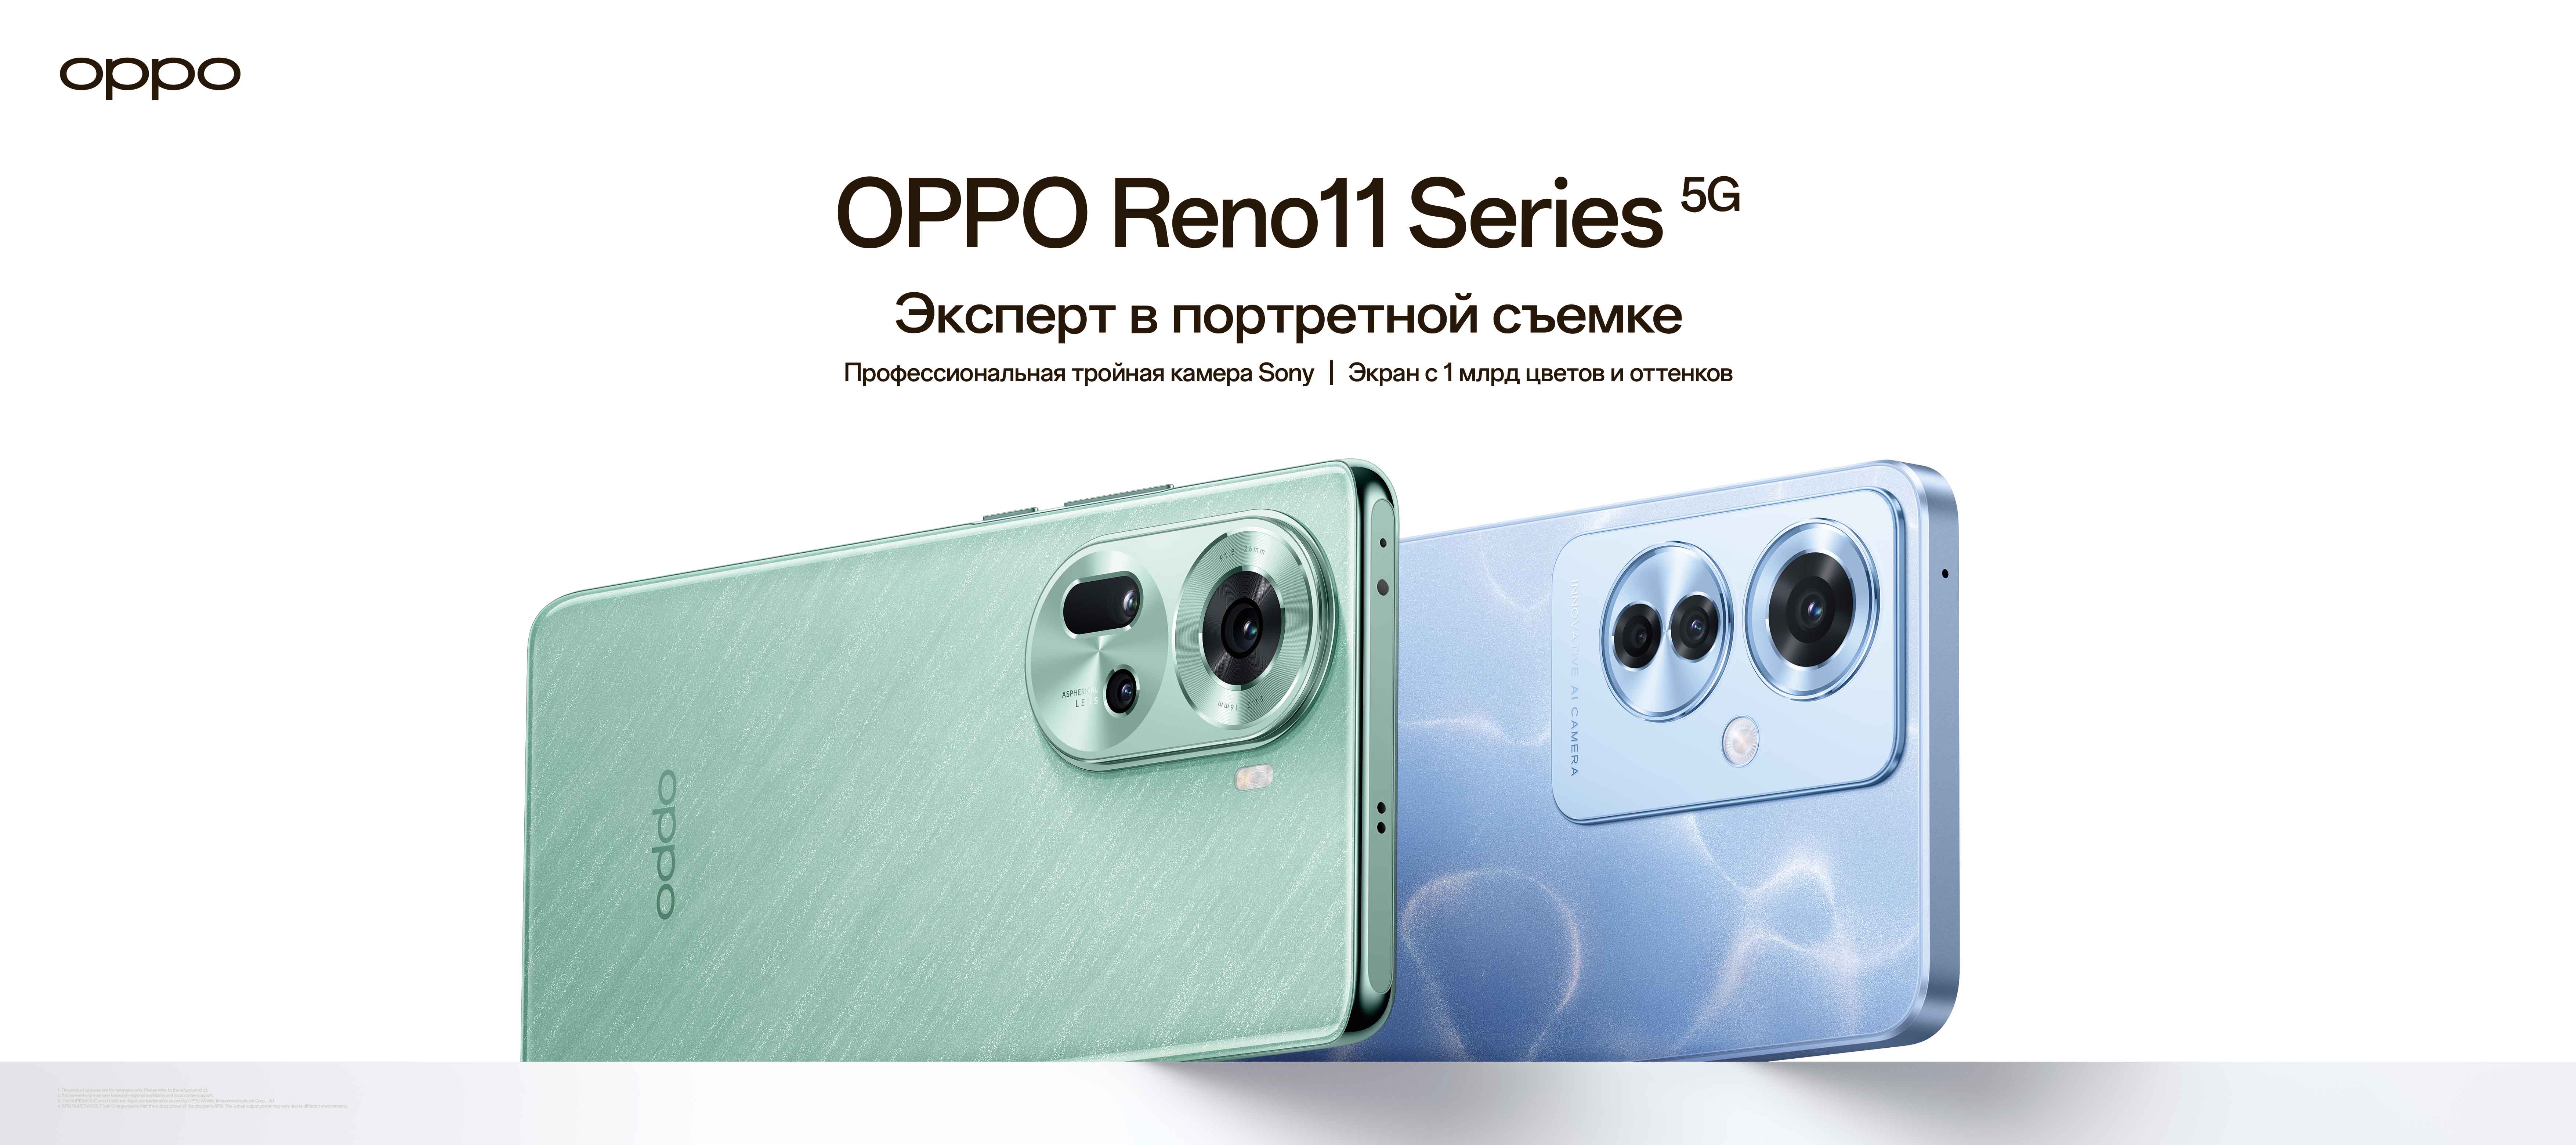 OPPO запустила в России продажи Reno11 с особой портретной камерой